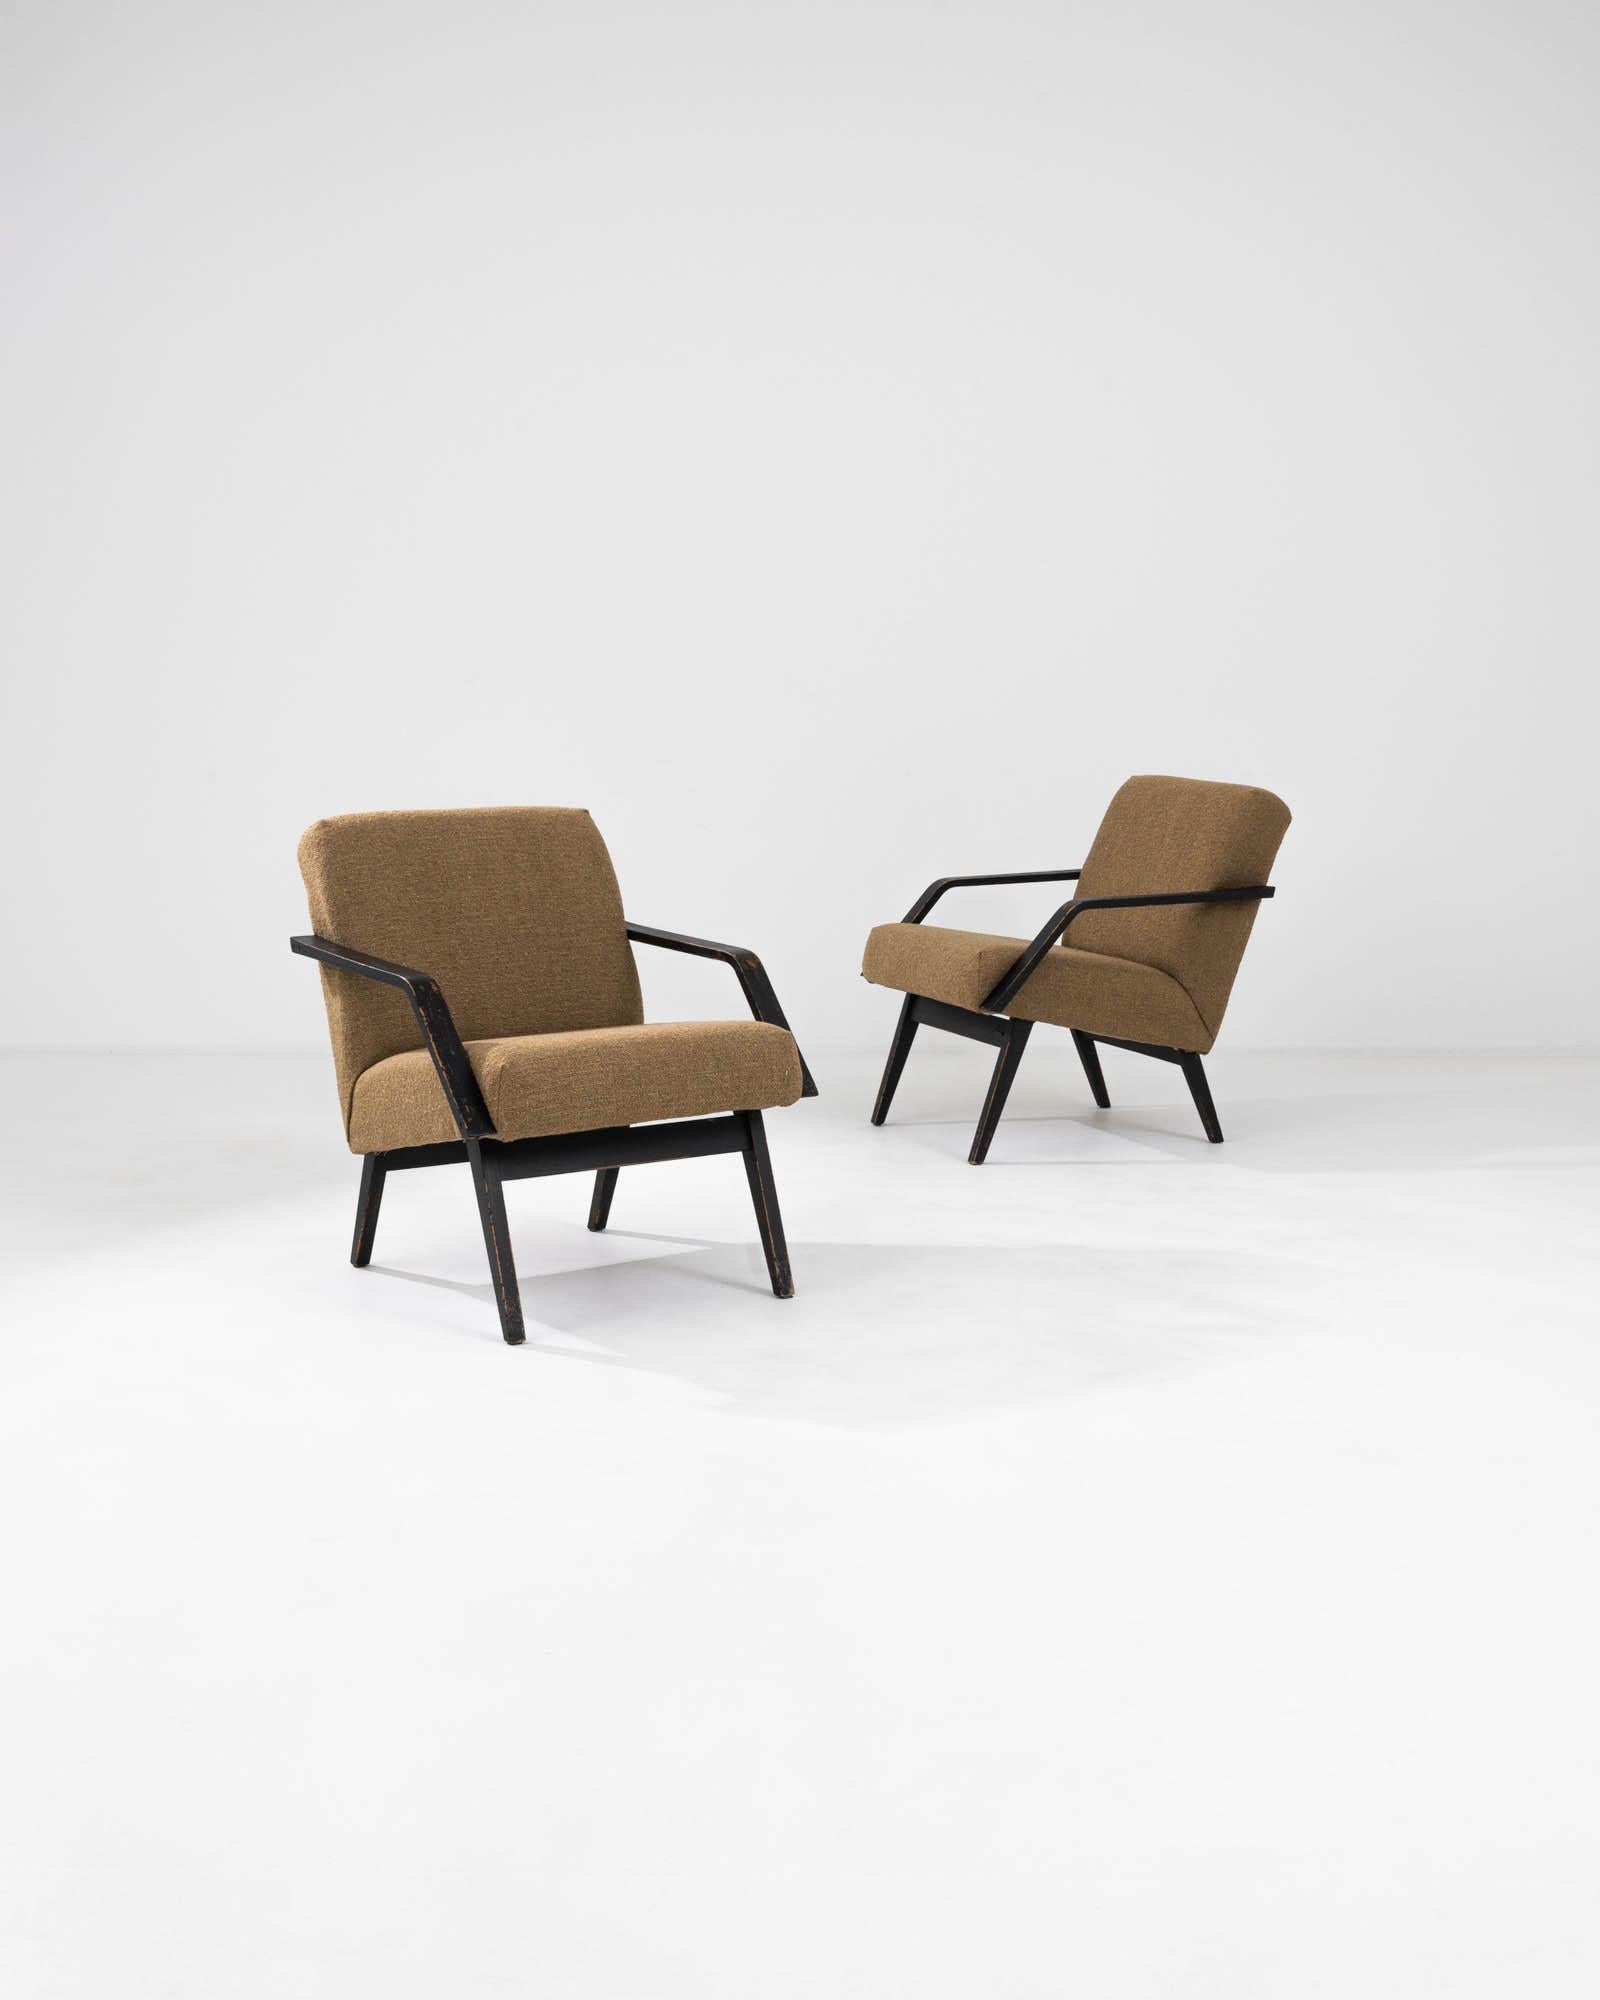 Voici une paire de fauteuils tapissés tchèques des années 1960 qui incarnent l'essence du design moderne du milieu du siècle avec un soupçon de flair européen. Revêtues d'un tissu texturé brun doré, ces chaises offrent une chaleur visuelle qui